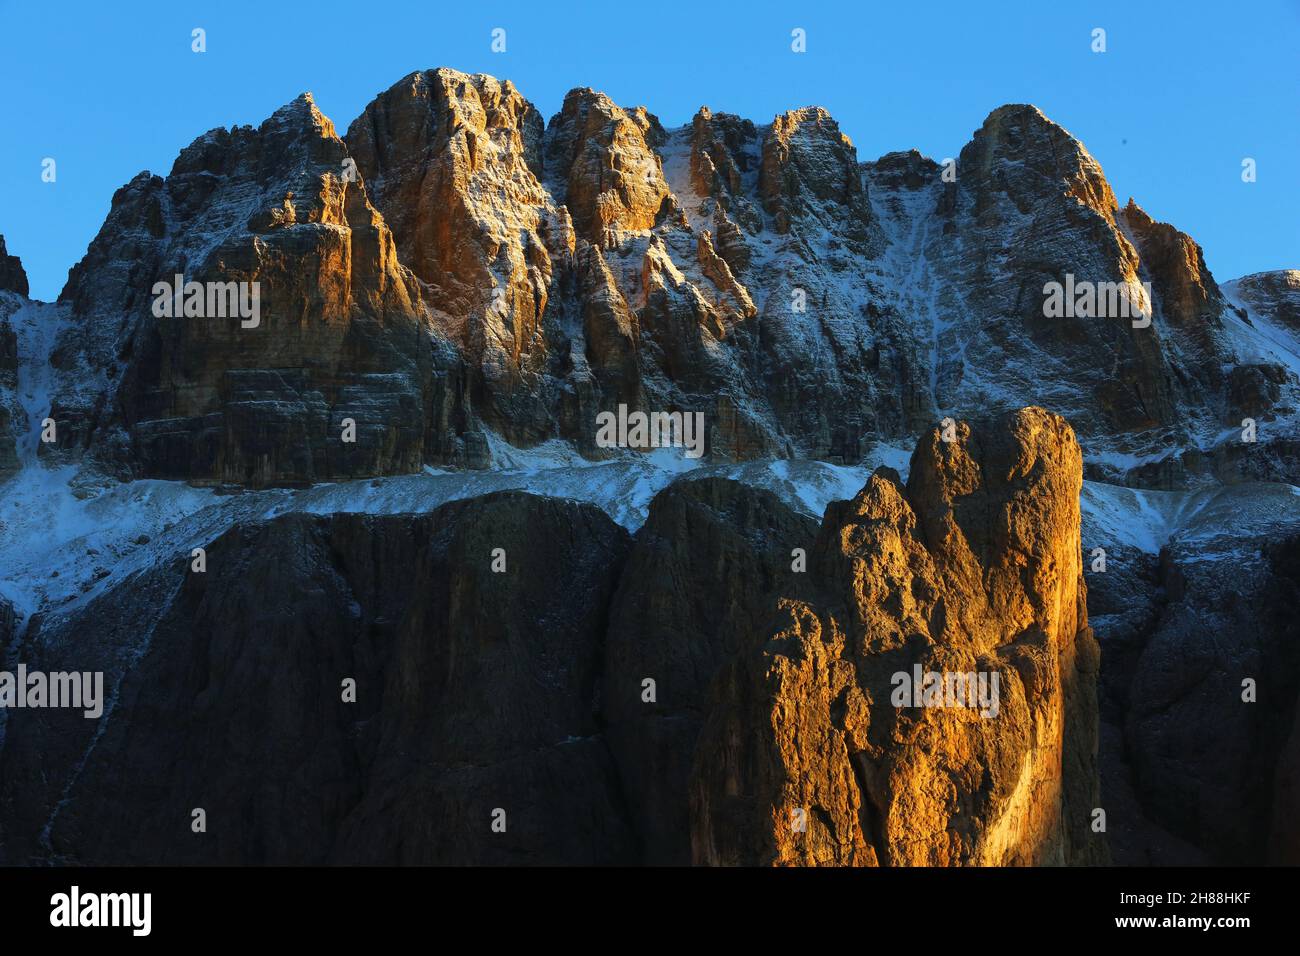 Dolomiten, schöne Wolken und Schnee an den Felsen des Sella Massiv bei Wolkenstein gegenüber Langkofel in Südtirol in den Dolomiten Italien Stock Photo